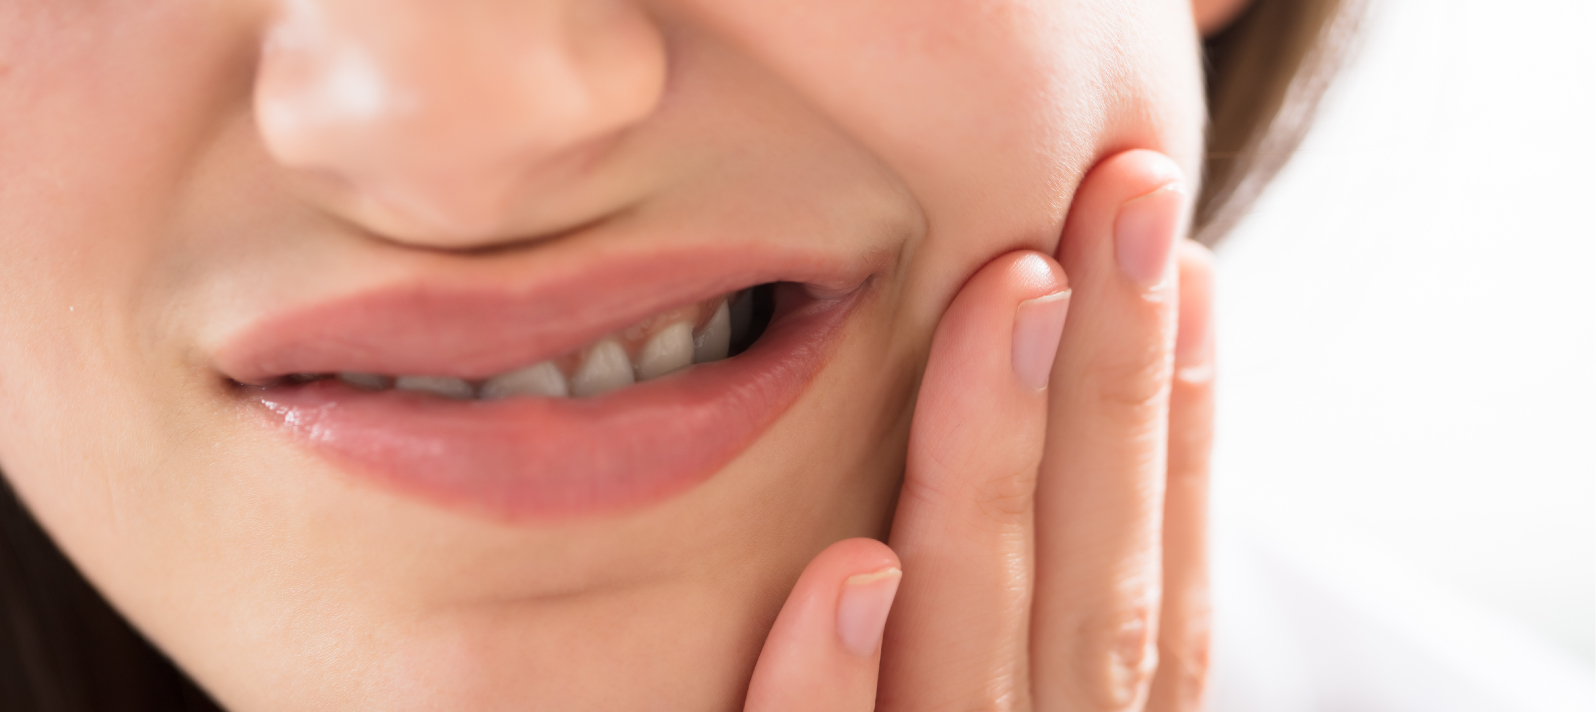 El dolor de las encías es uno de los problemas más comunes